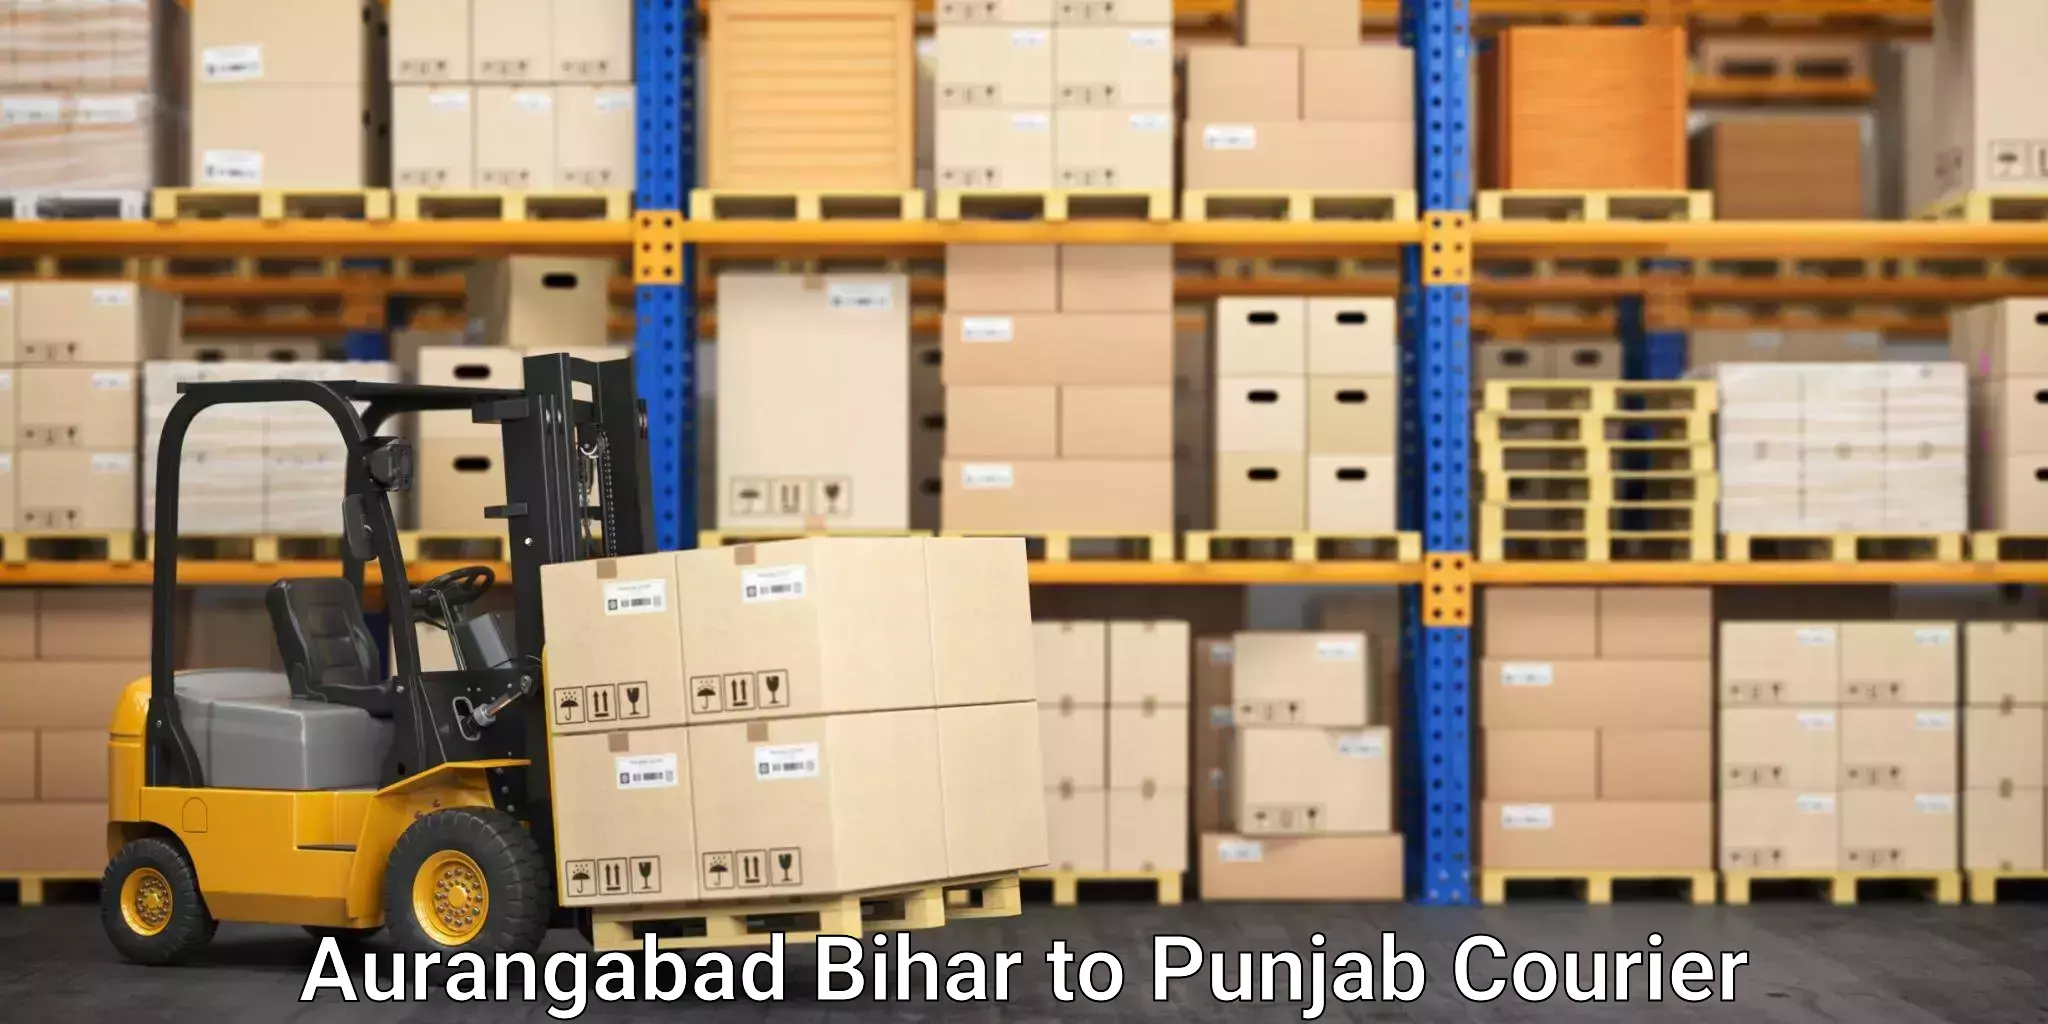 Expert packing and moving Aurangabad Bihar to Rupnagar